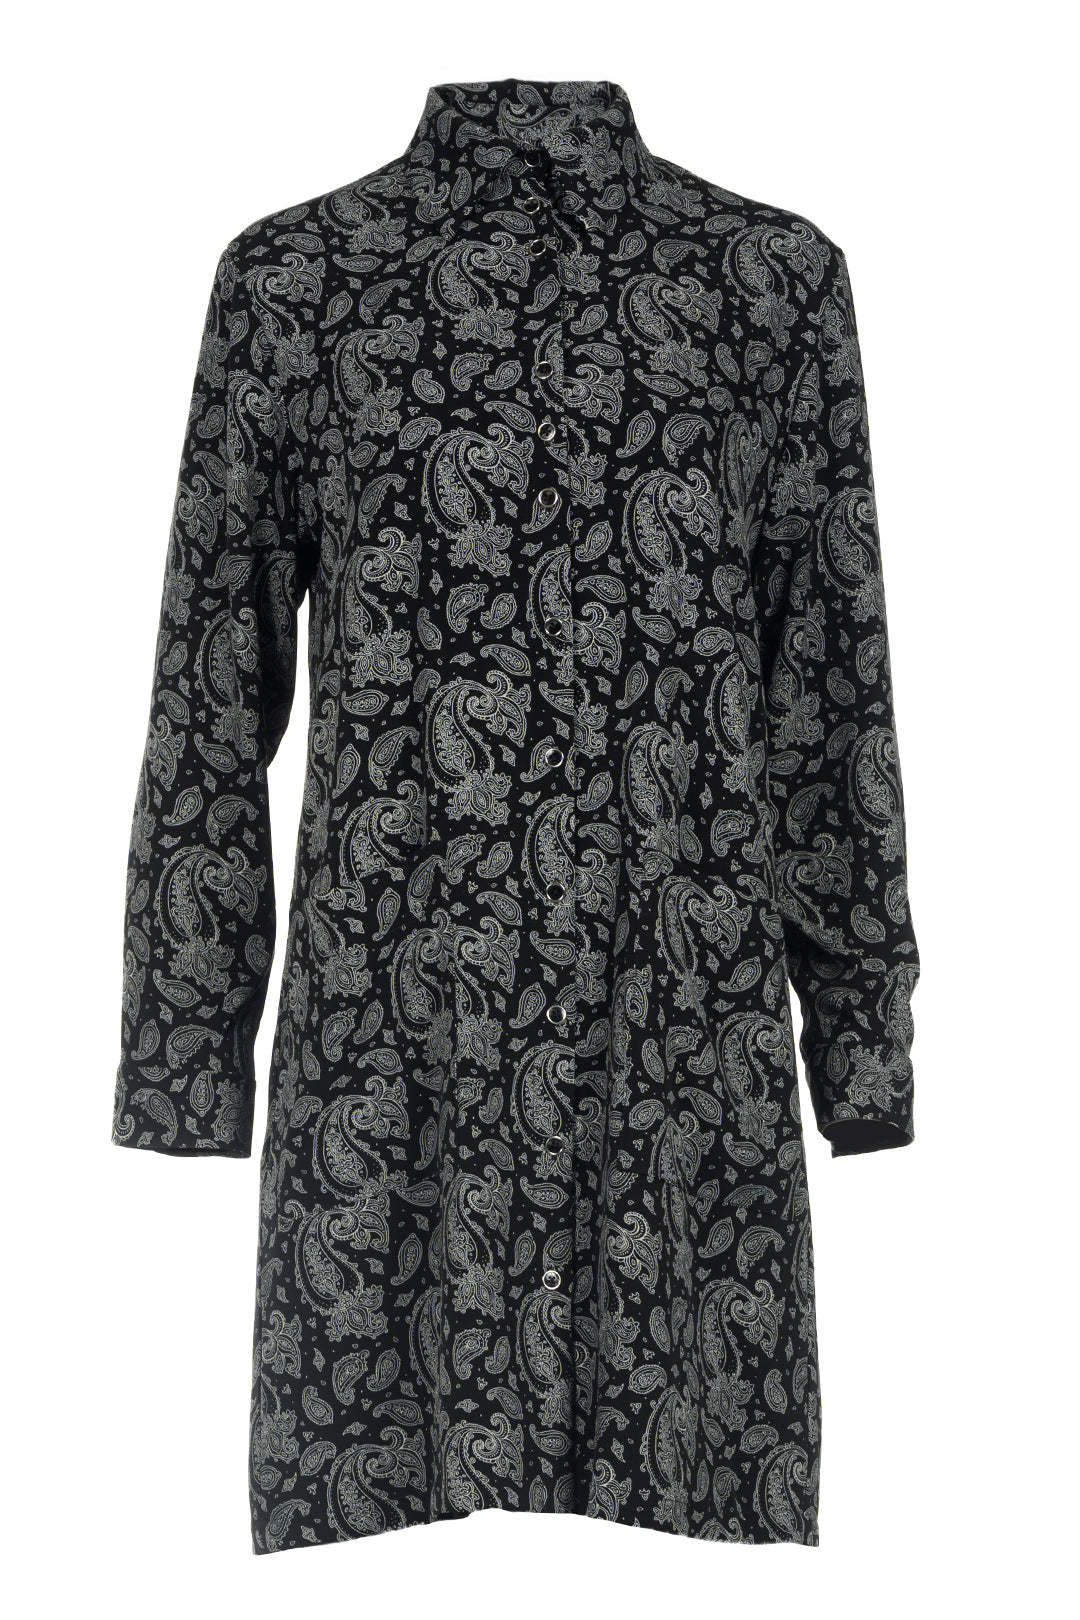 Robe noire paisley | Dingo